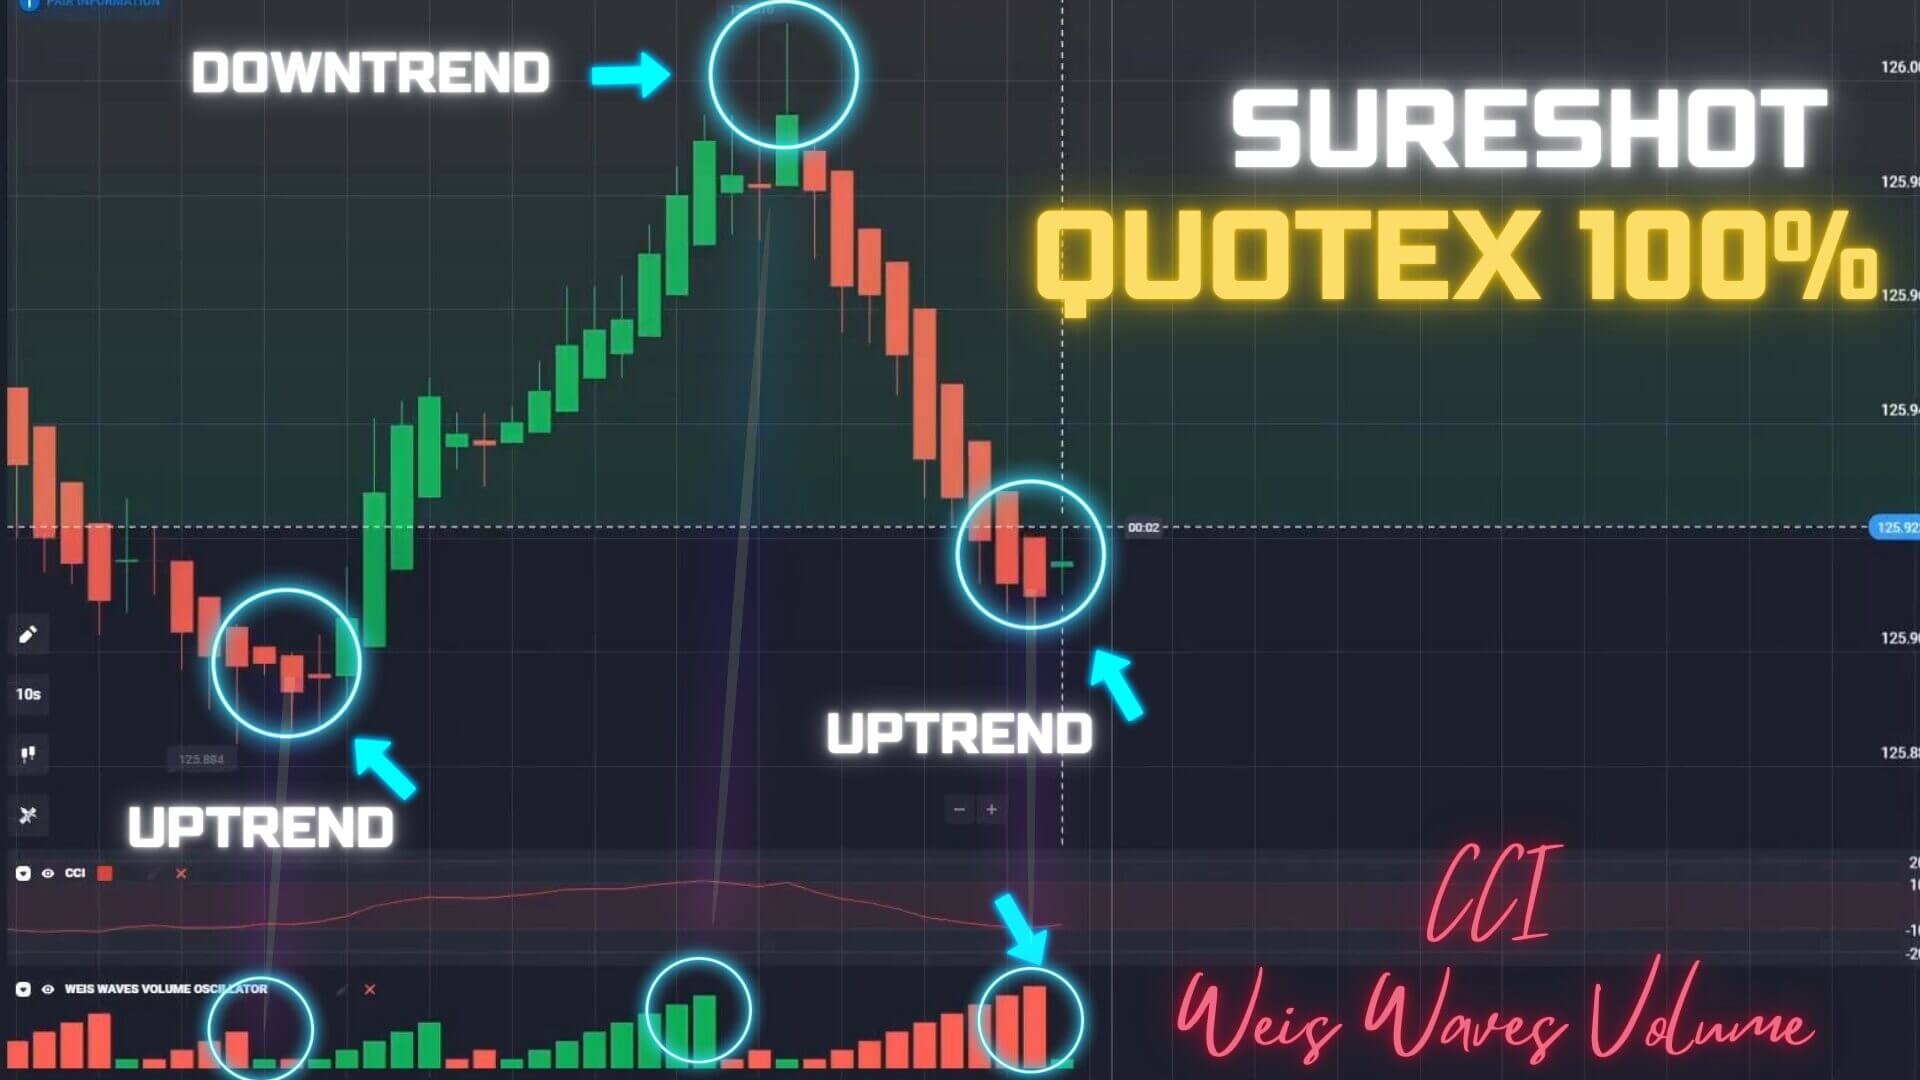 Sureshot Quotex Strategy